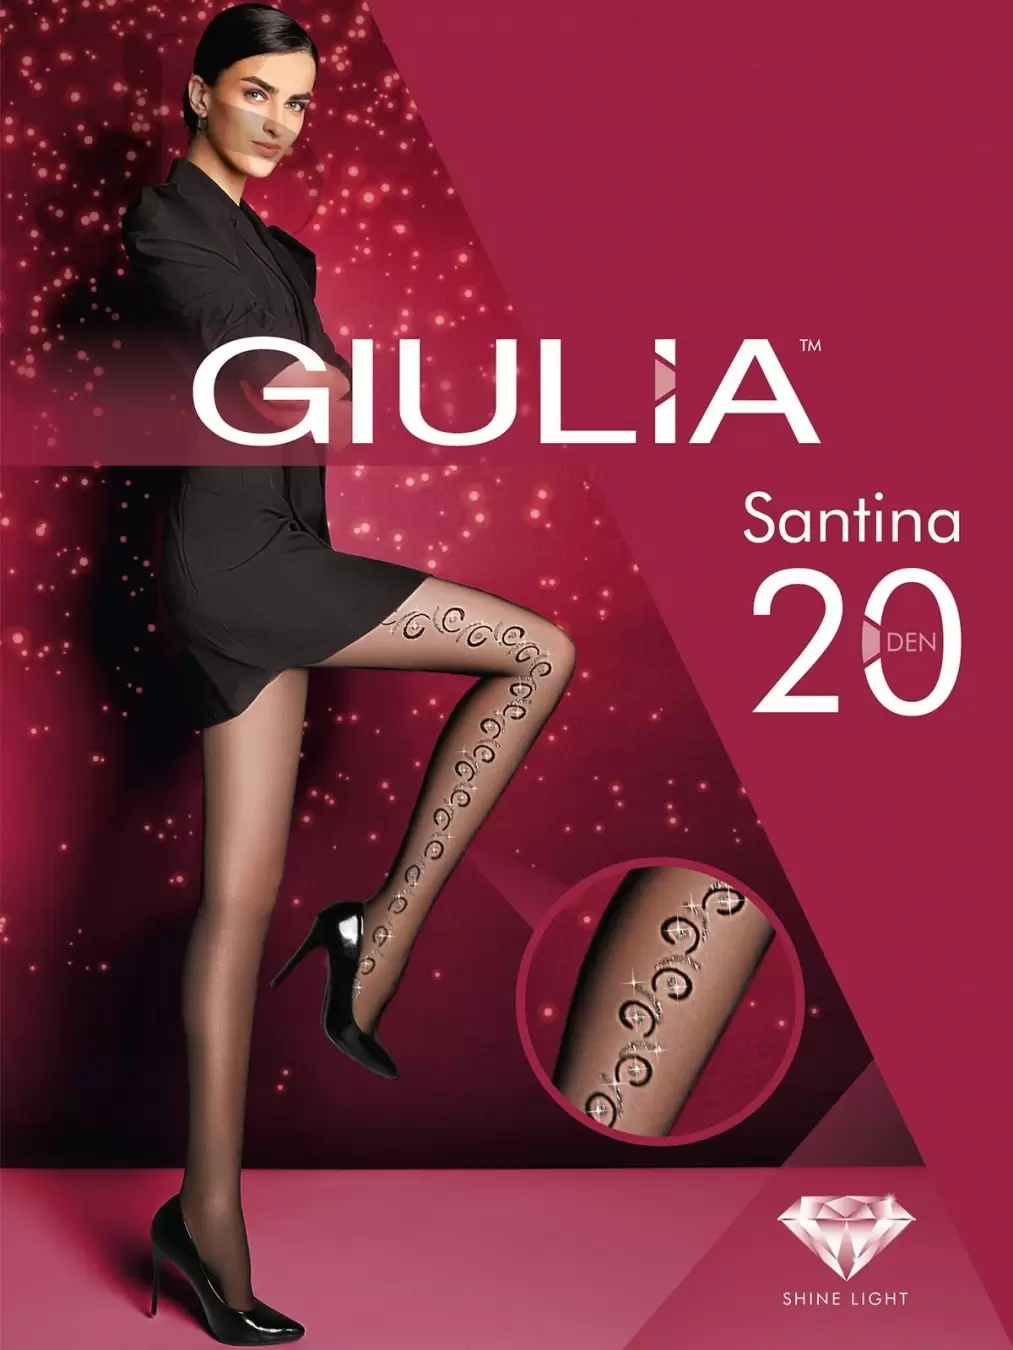 Giulia SANTINA 10, фантазийные колготки купить недорого в интернет